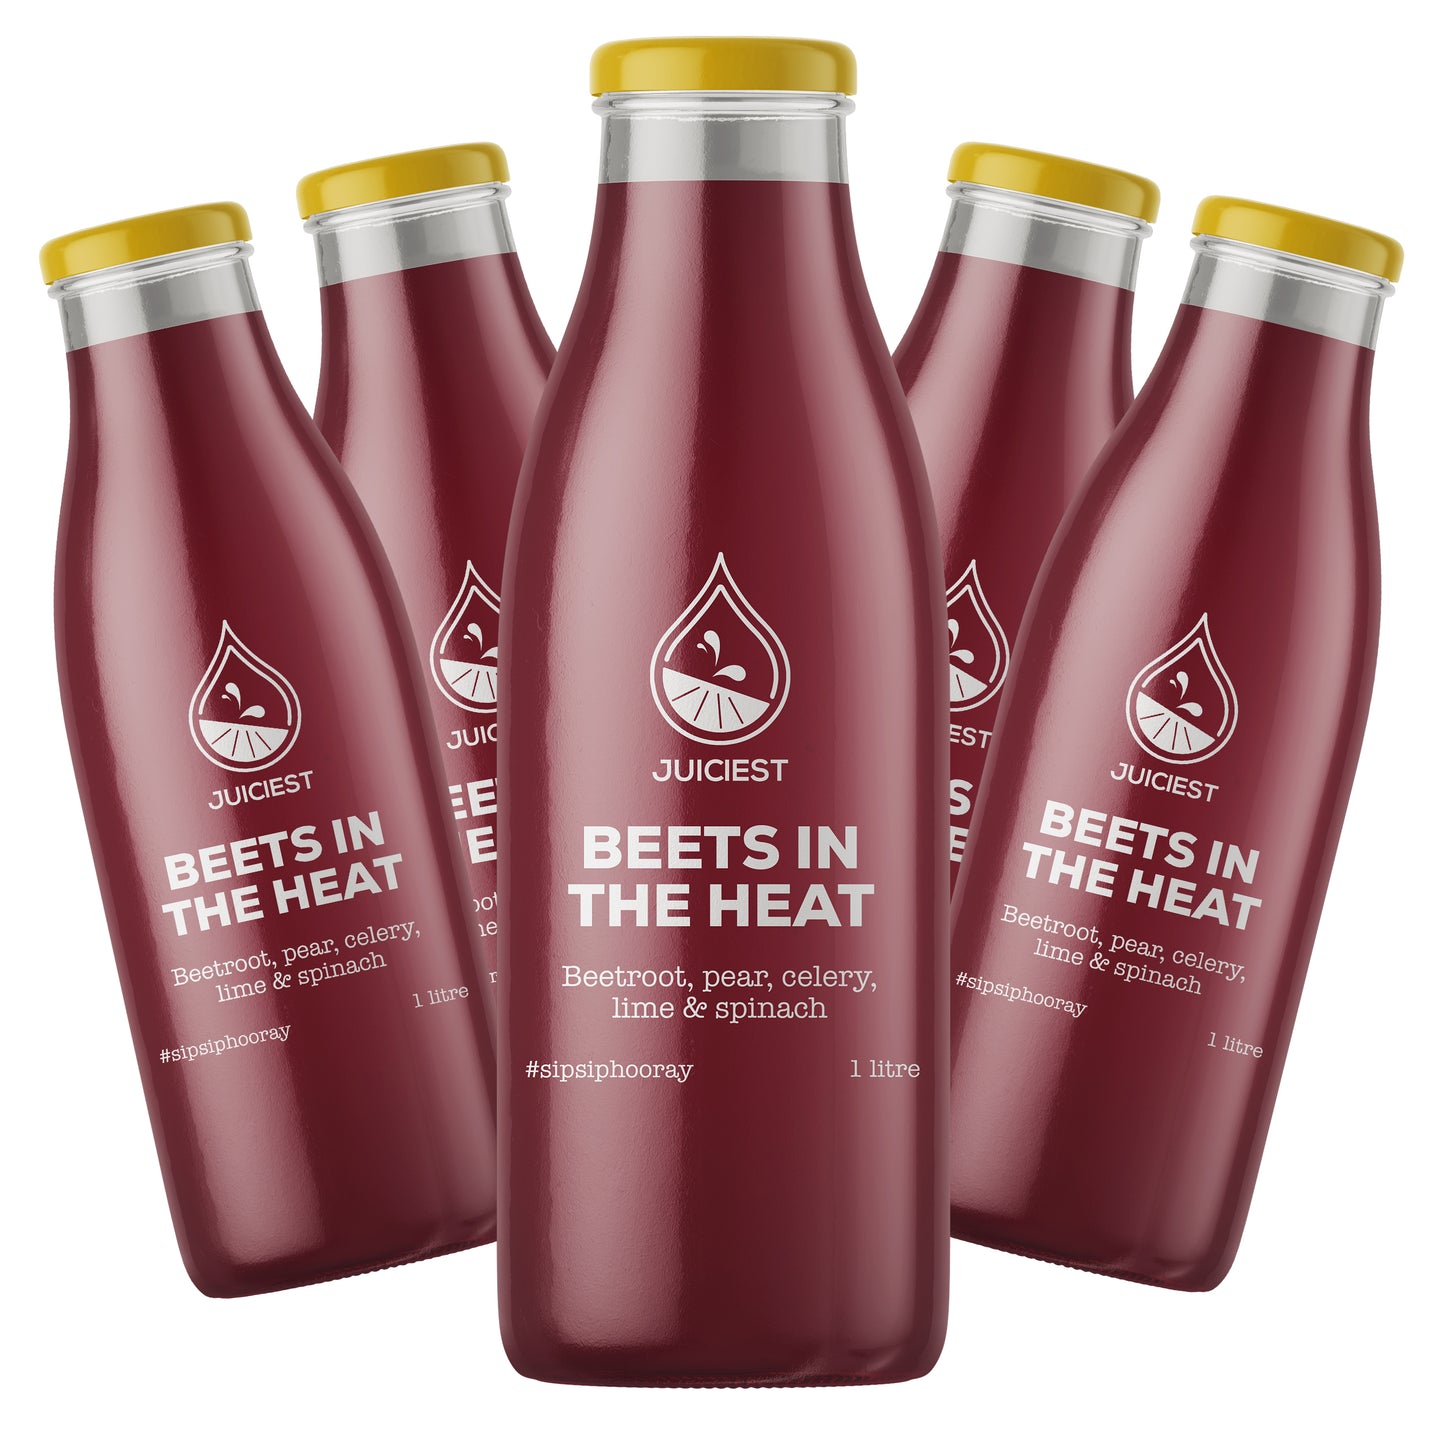 Juiciest Beets in the Heat 5x 1L bottles